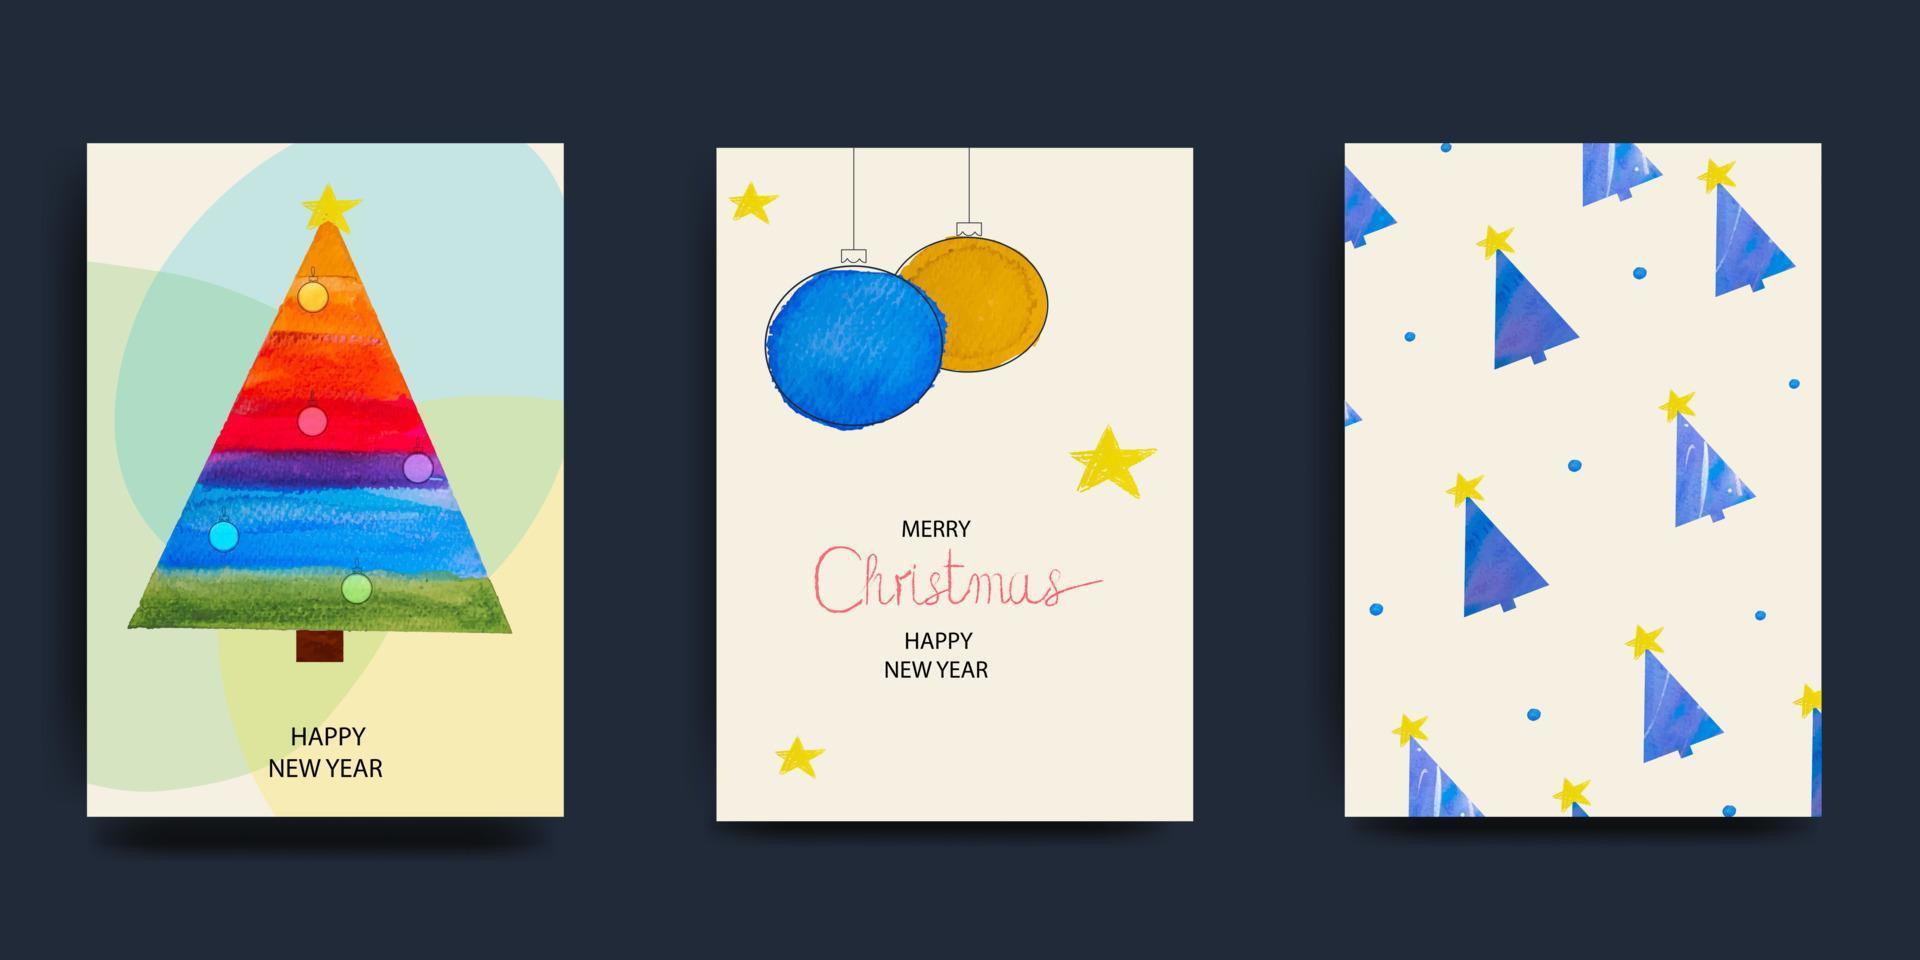 feliz navidad y feliz año nuevo conjunto de tarjetas de felicitación, carteles, portadas navideñas. diseño navideño moderno en colores azul, verde y rojo. árbol de navidad, bolas, regalos. vector